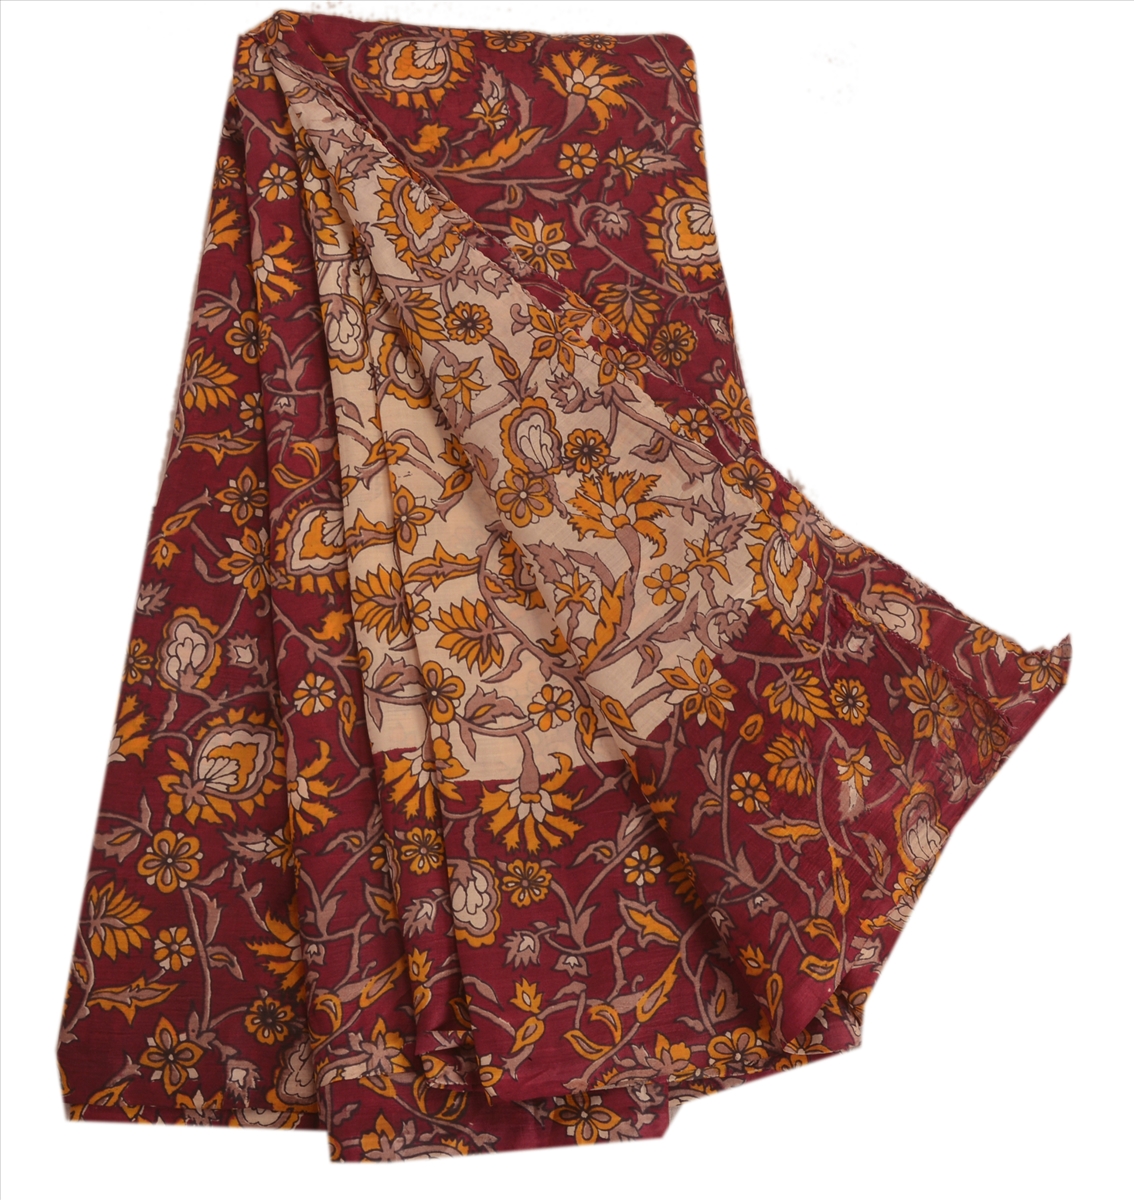 Sanskriti Indian Vintage Printed Saree 100% Pure Silk Fabric Maroon ...